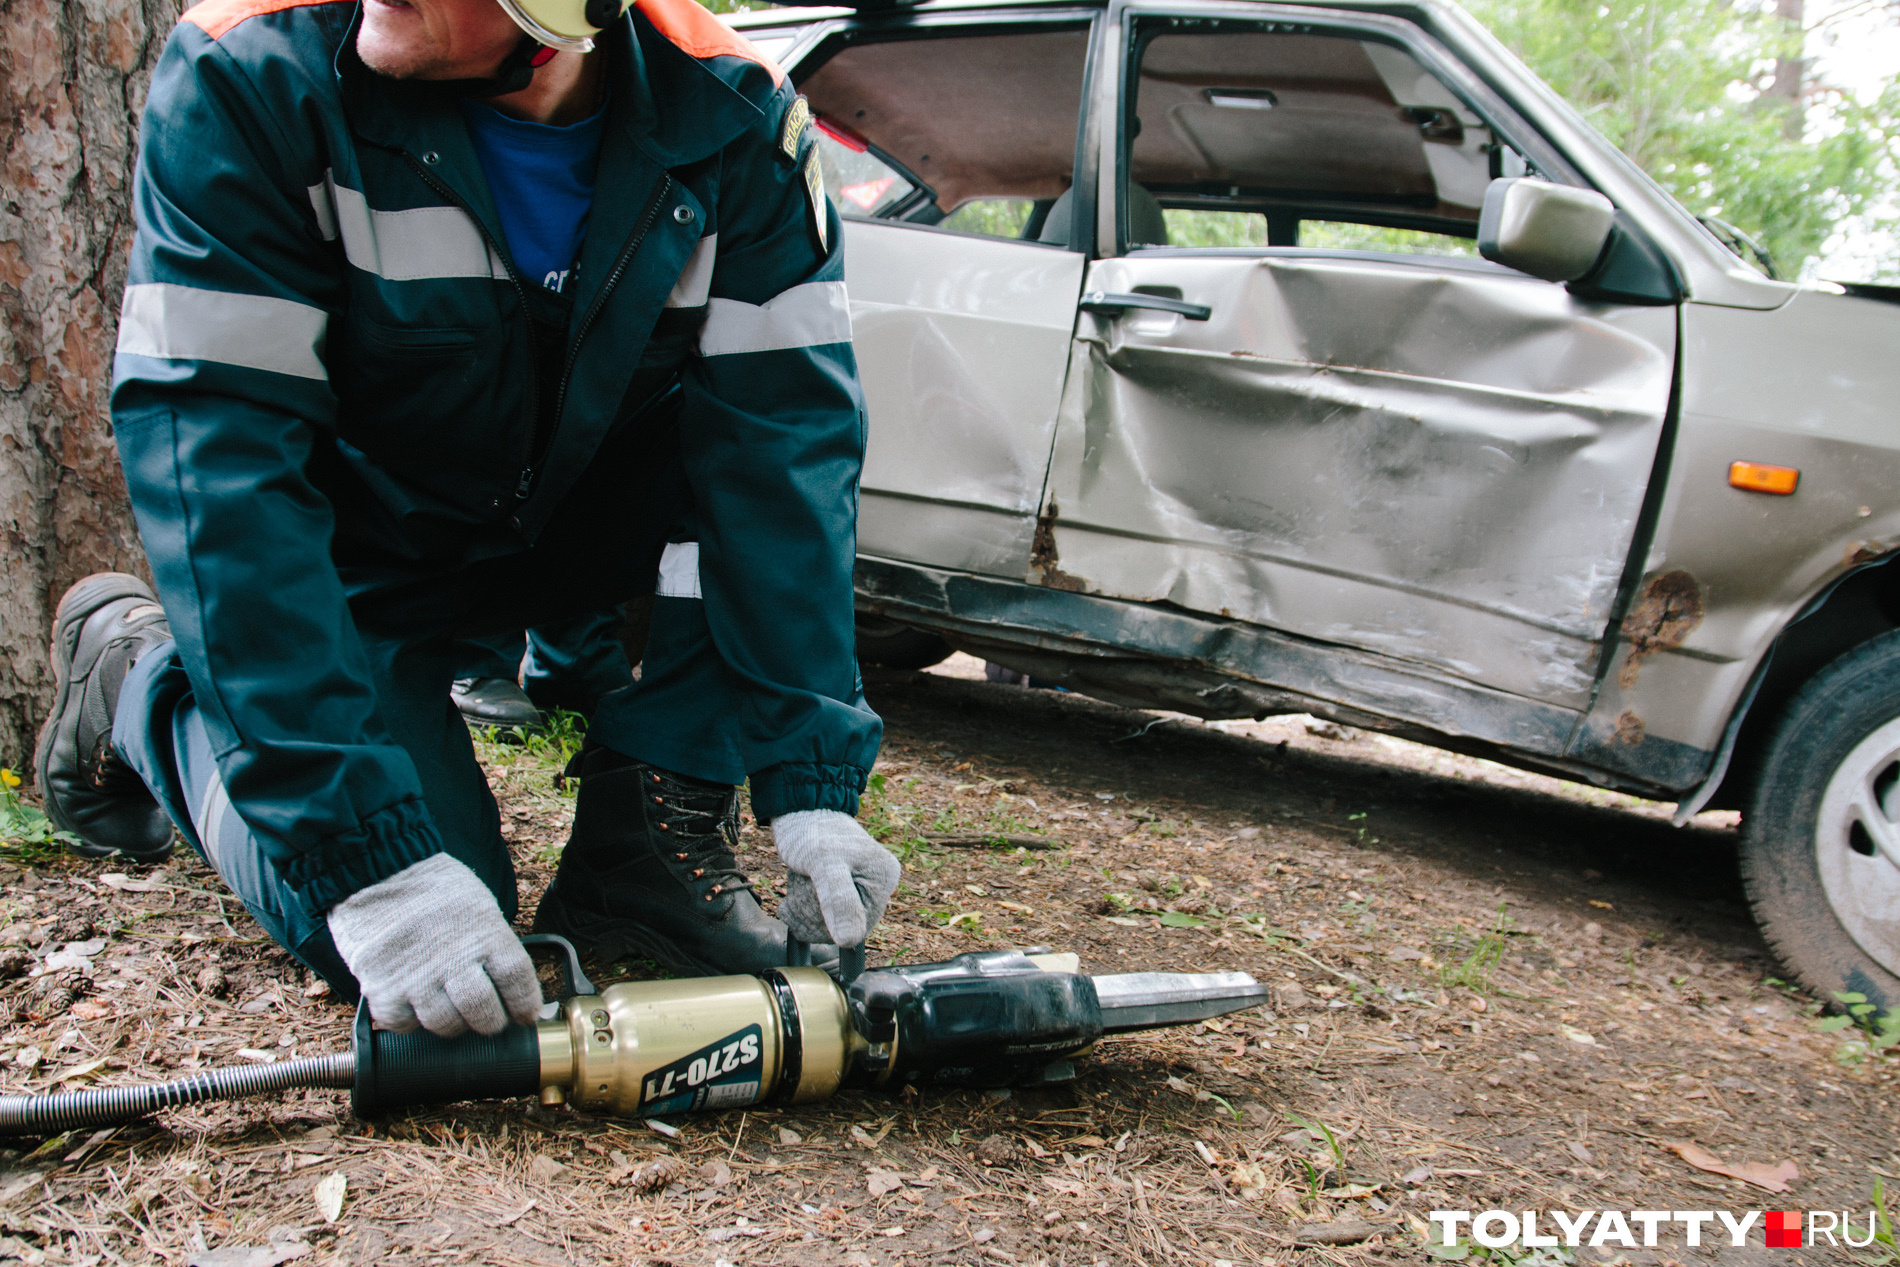 Спасатели нередко используют специальный инструмент, чтобы открыть автомобиль, пострадавший в аварии